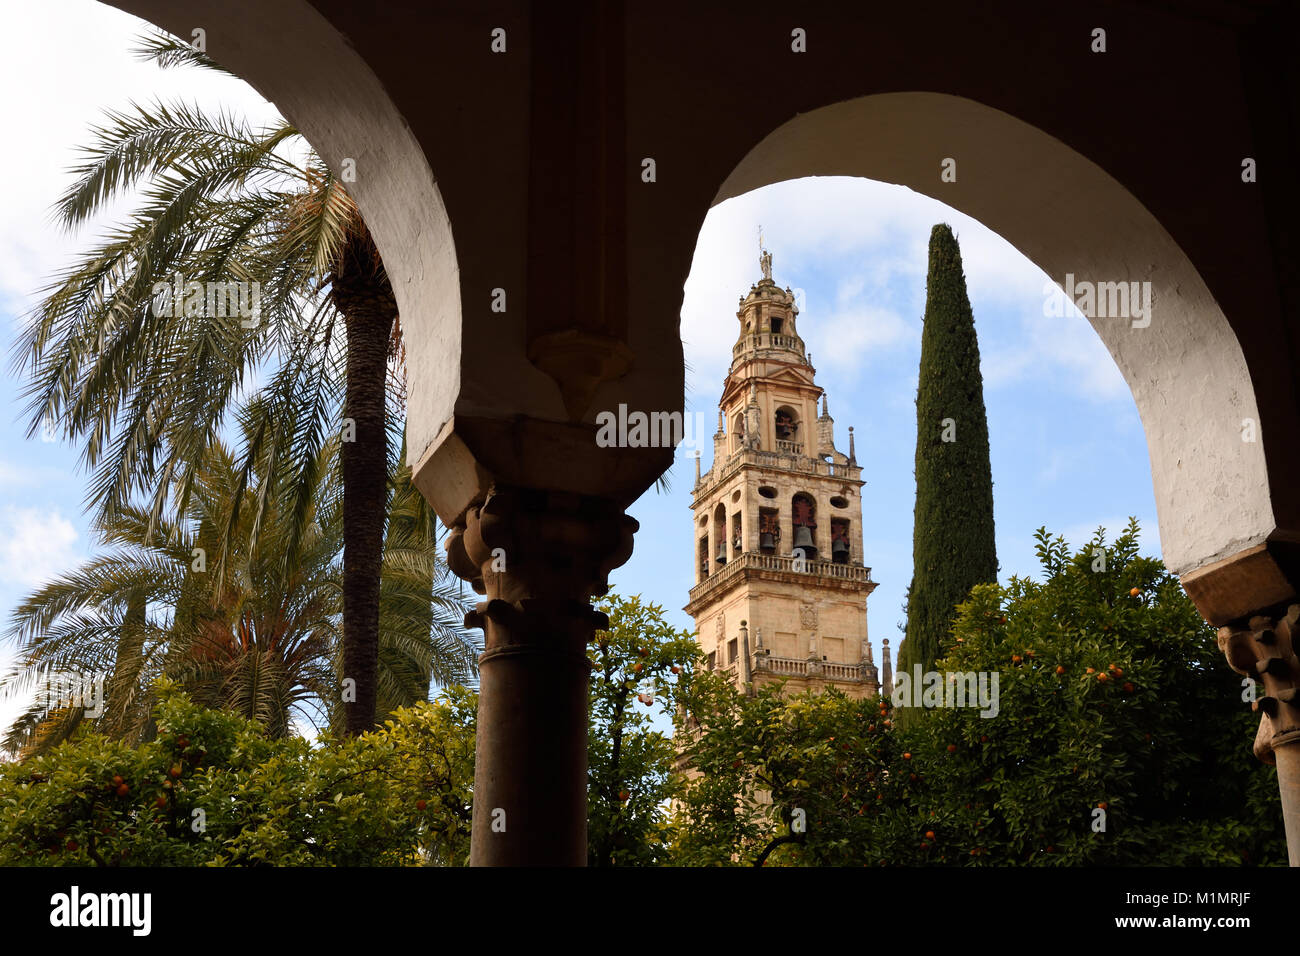 Cordoba- Mesquita, cathédrale, une mosquée islamique médiéval transformé en un chrétien catholique romain, l'Andalousie ( Orange- et de palmiers dans la cour de l'orange) l'Espagne, l'espagnol Banque D'Images